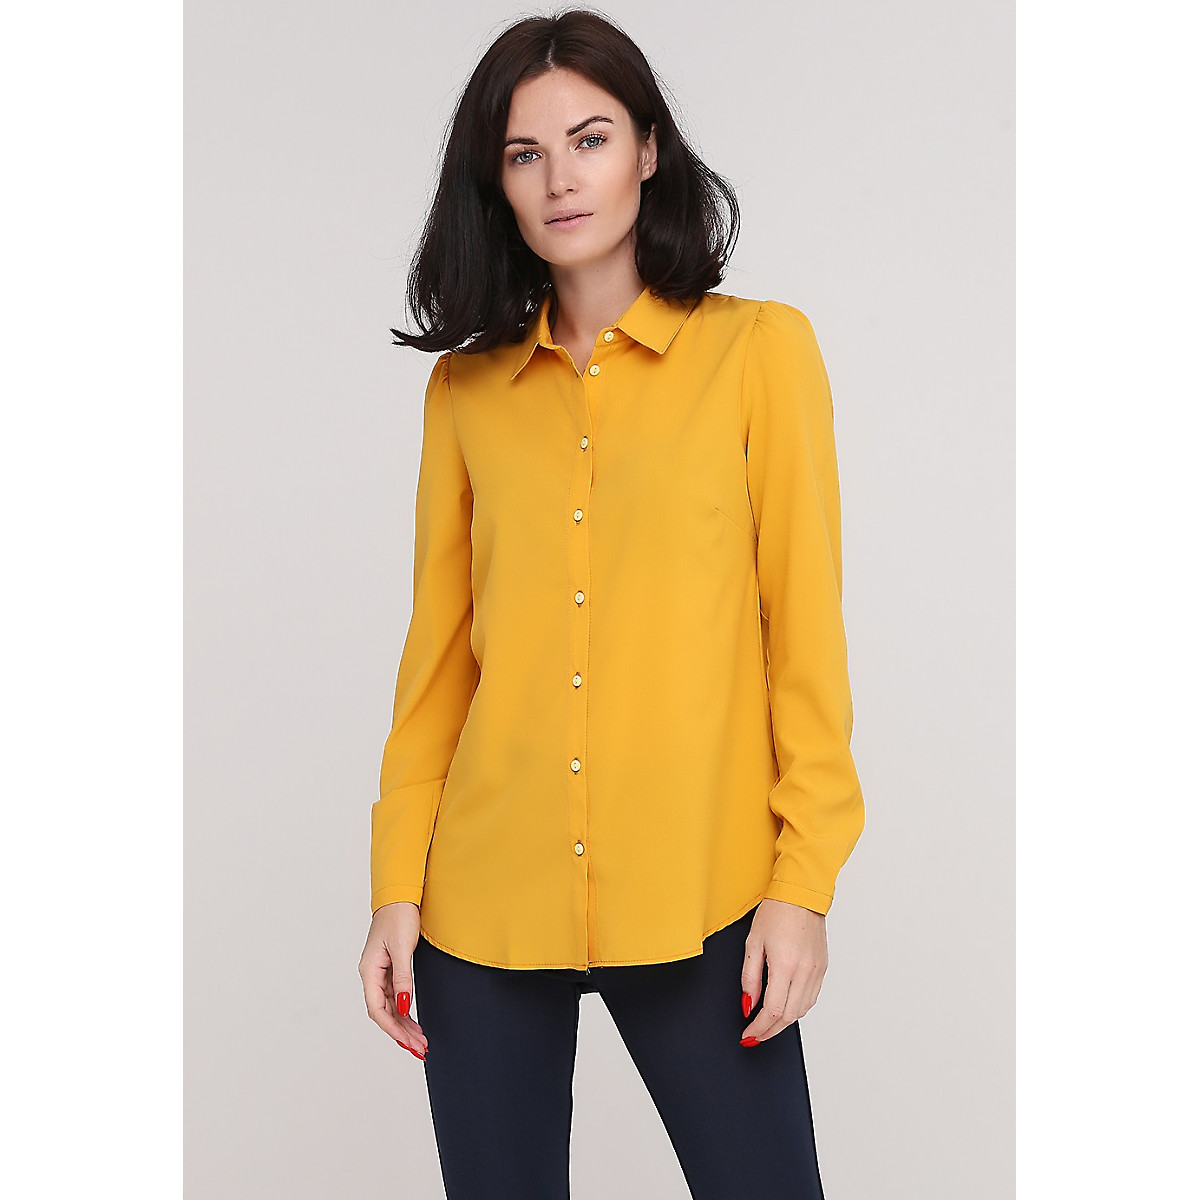 Горчичная рубашка. Женская блузка горчичная. Рубашка горчичного цвета женская. Блуза горчичного цвета. Горчичневая кофта рубашка.